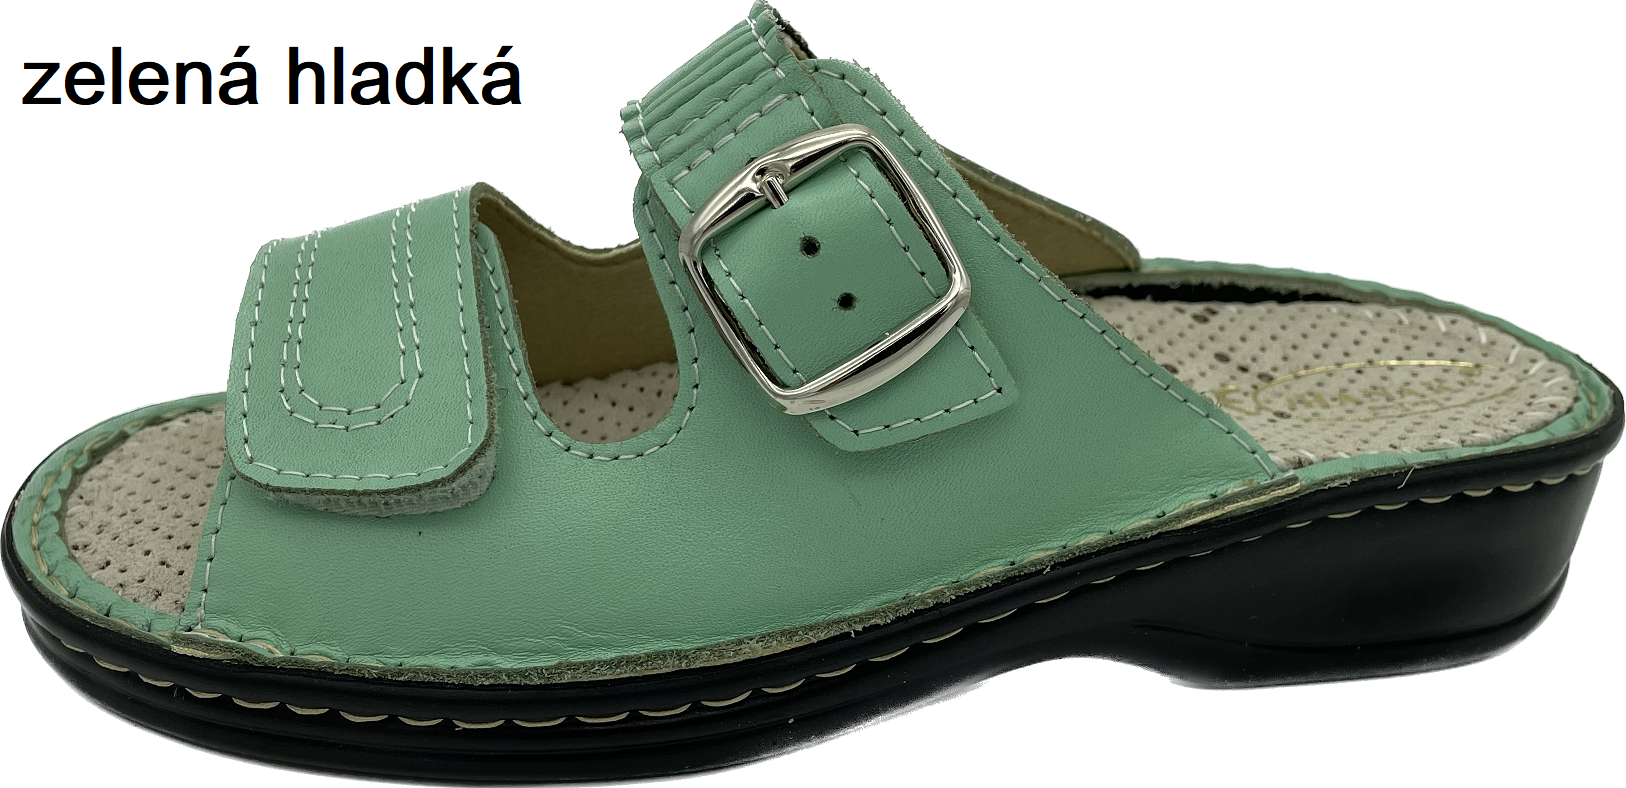 Boty Hanák vzor 305 - černá podešev Barva usně: zelená hladká, Velikosti obuvi: 35